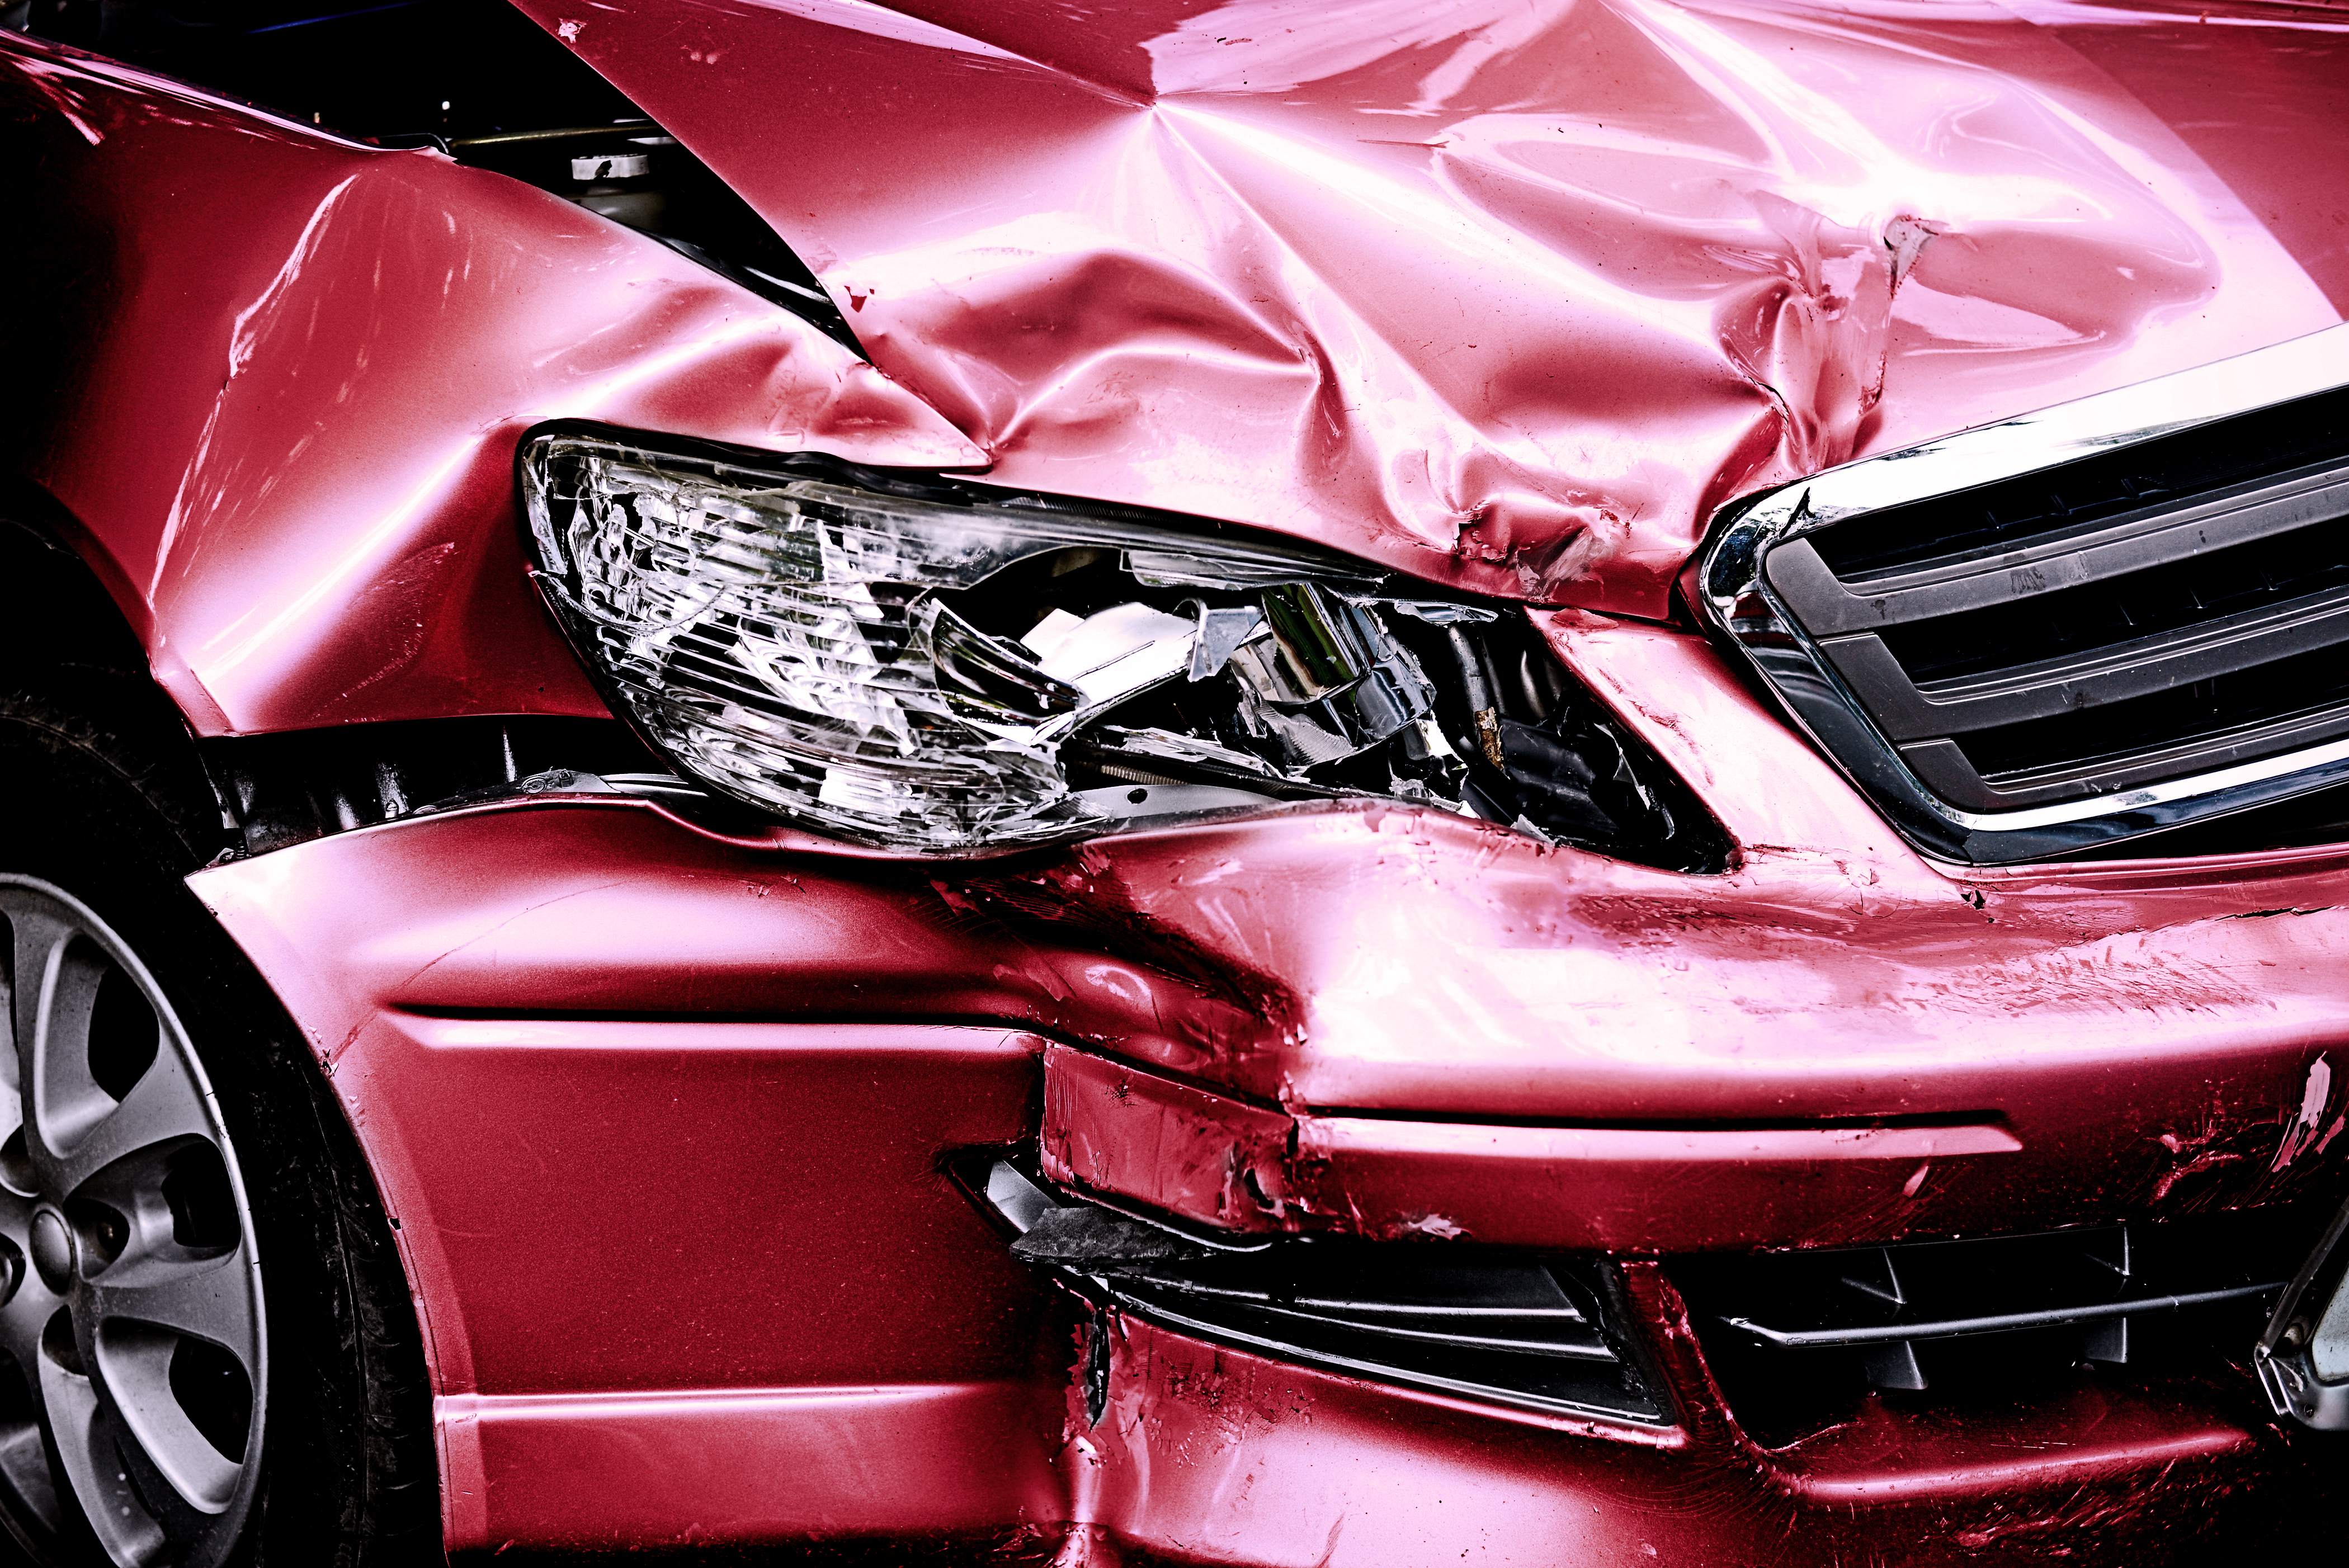 Une voiture endommagée | Source : Shutterstock